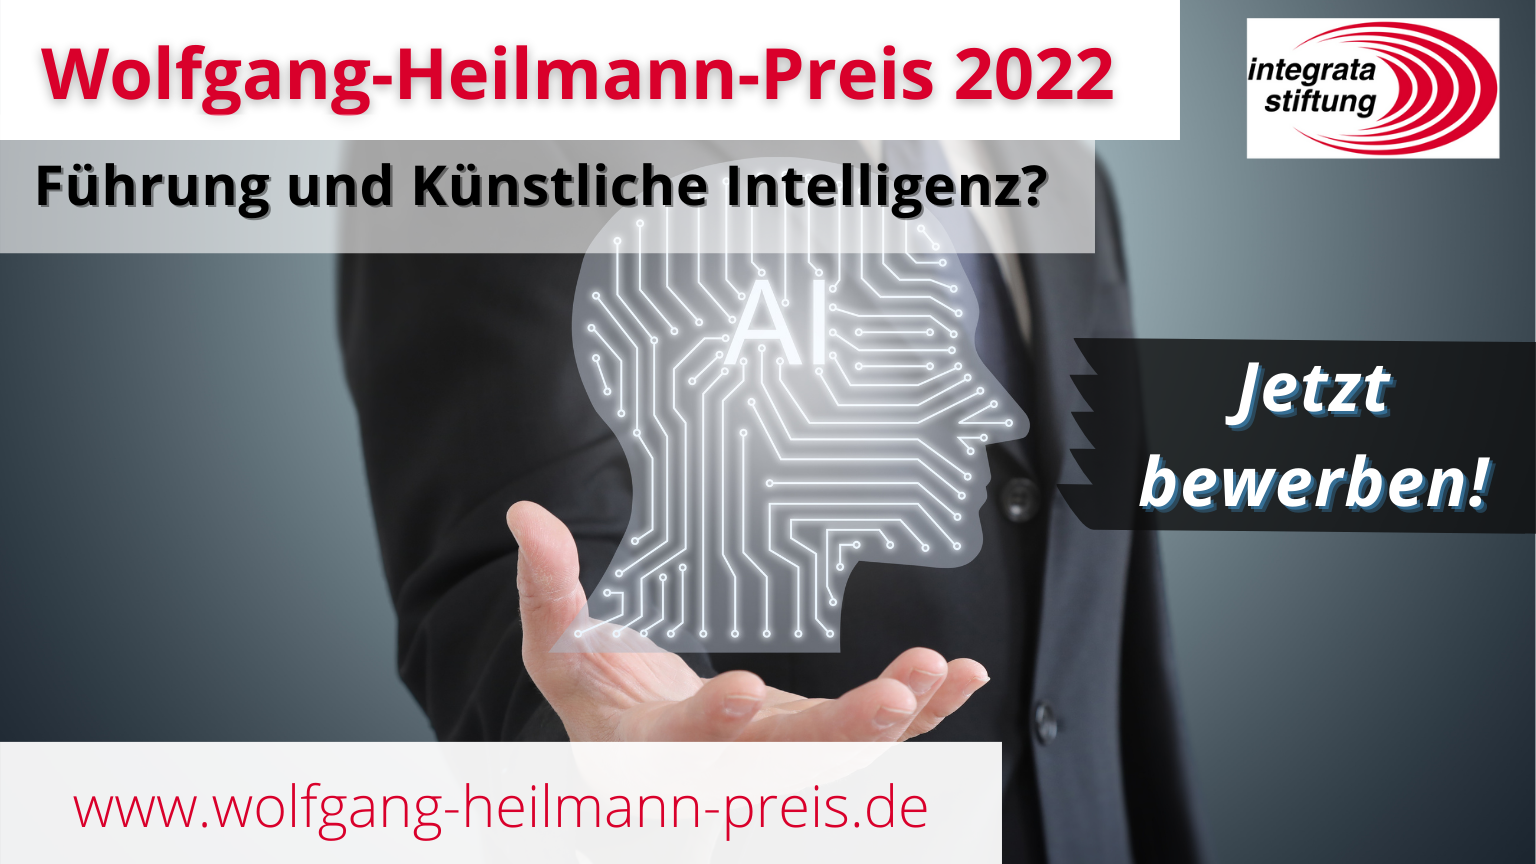 Aufruf zur Nominierung für den Wolfgang-Heilmann-Preis 2022